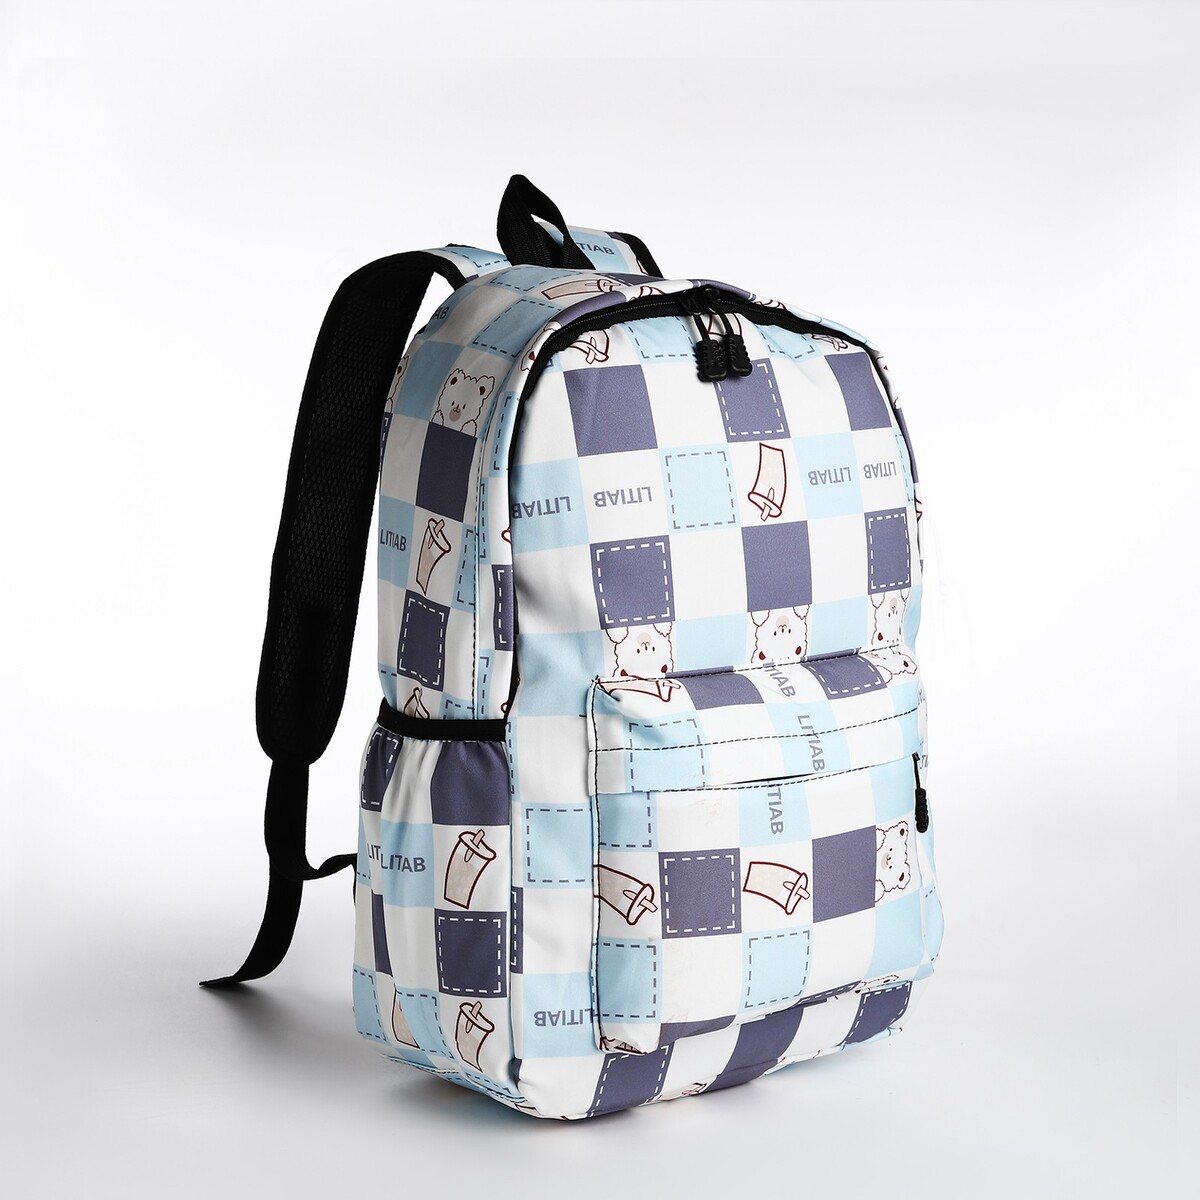 Рюкзак молодежный из текстиля, 3 кармана, цвет молочный/голубой